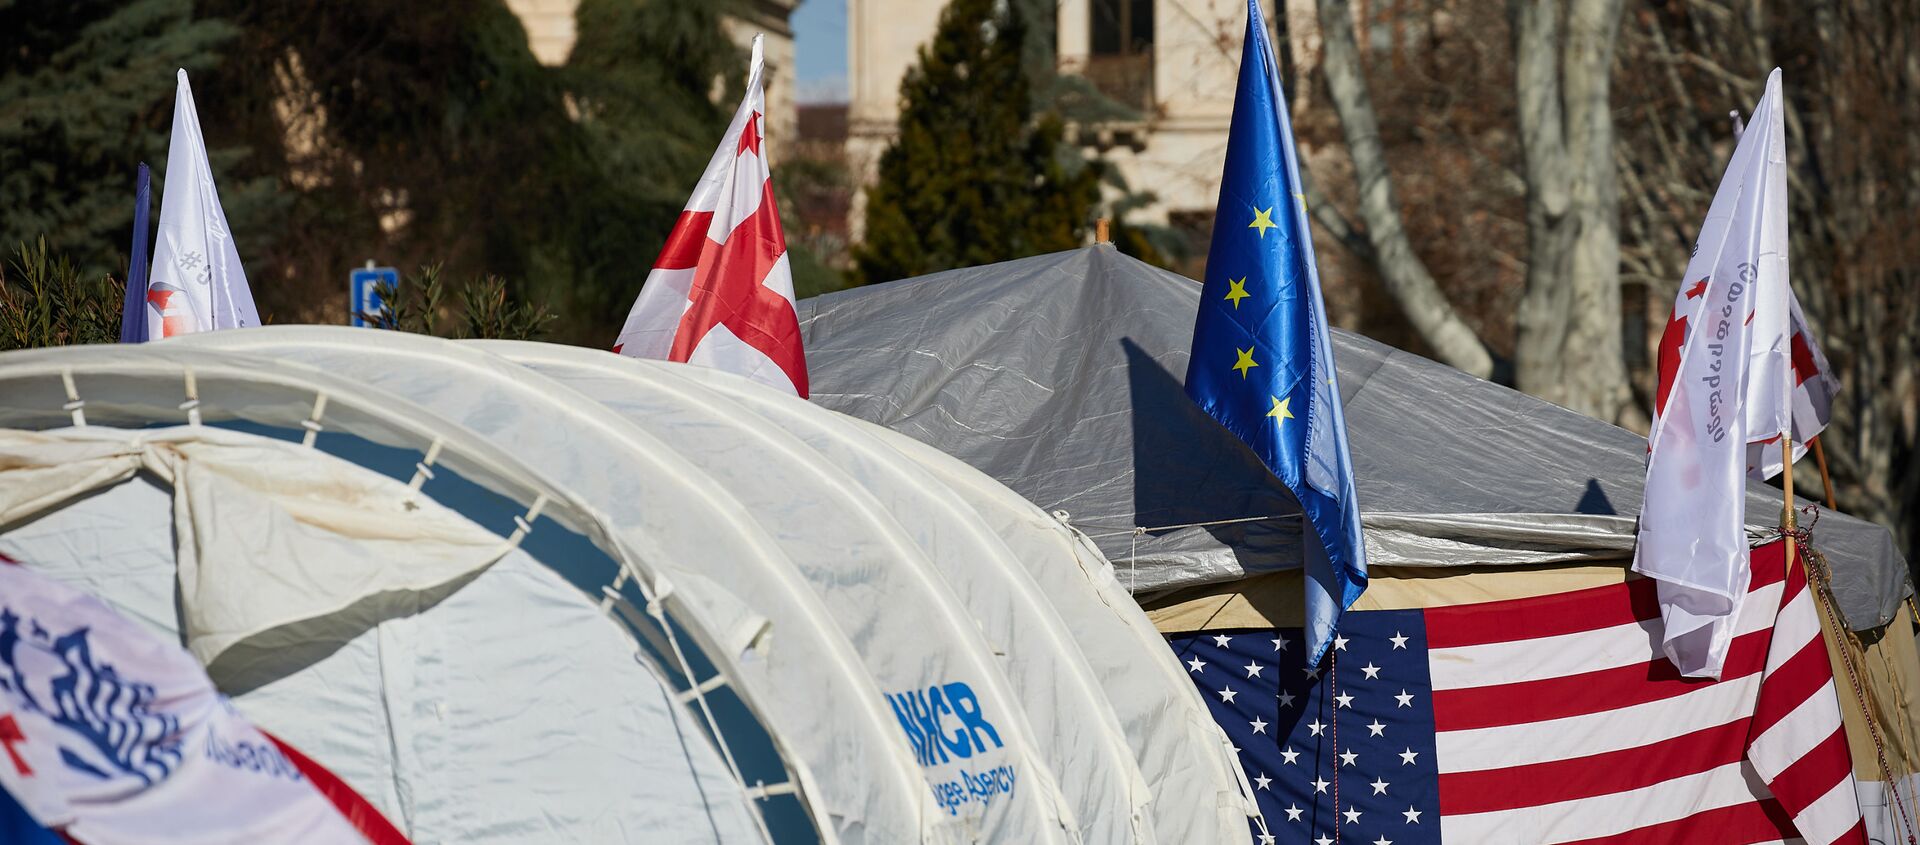 Палатки оппозиции на проспекте Руставели перед зданием парламента Грузии - Sputnik Грузия, 1920, 13.03.2021